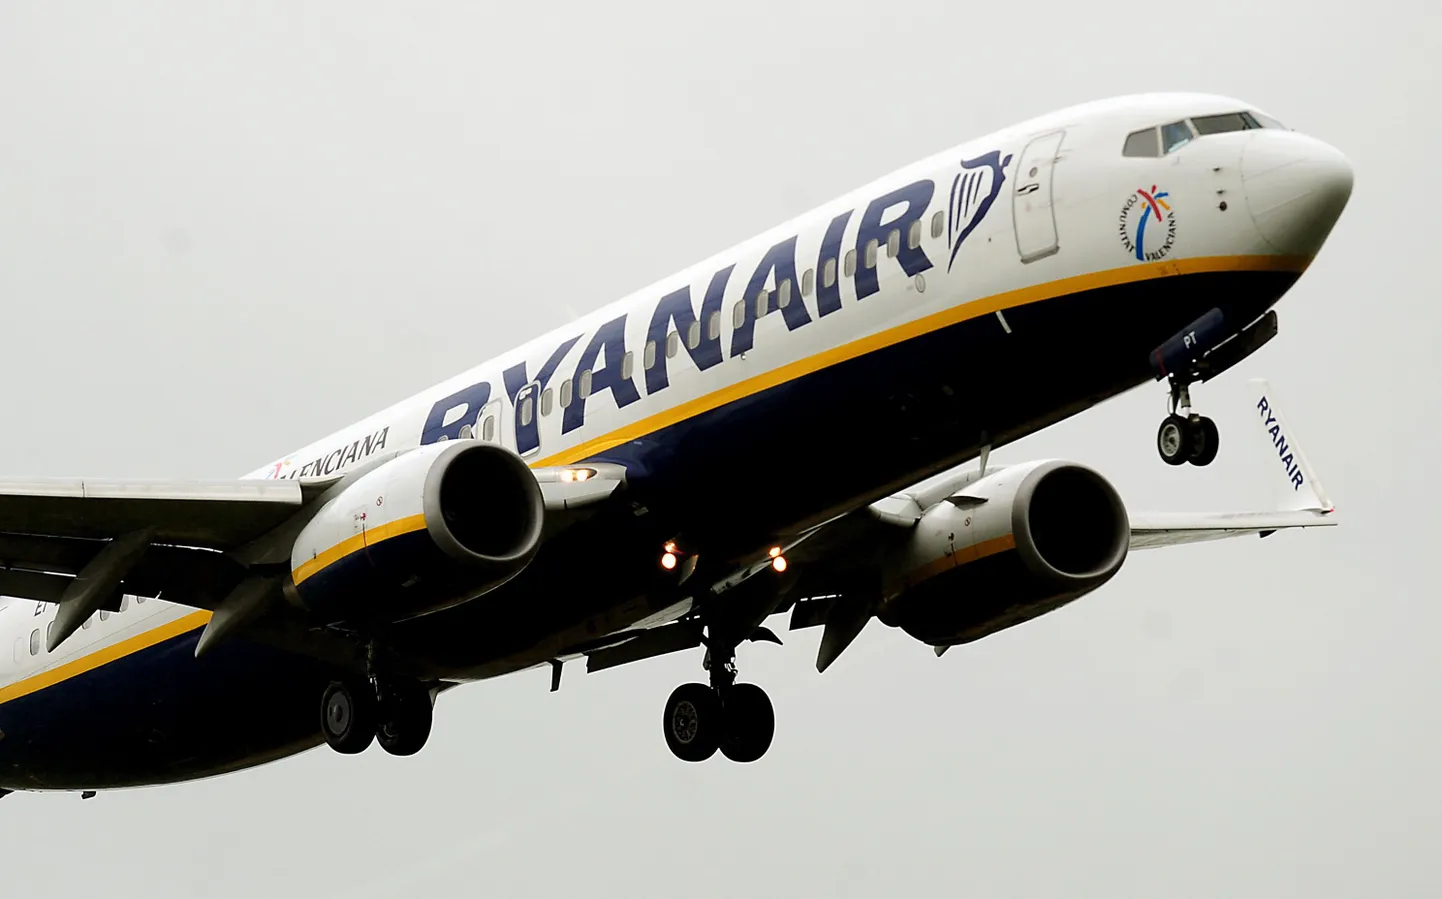 Ryanairi pressiesindaja sõnul on taoline ebaviisakas käitumine lennukis lubamatu ning antud olukorras tuleb prioriteediks seada teiste reisjate turvalisus.